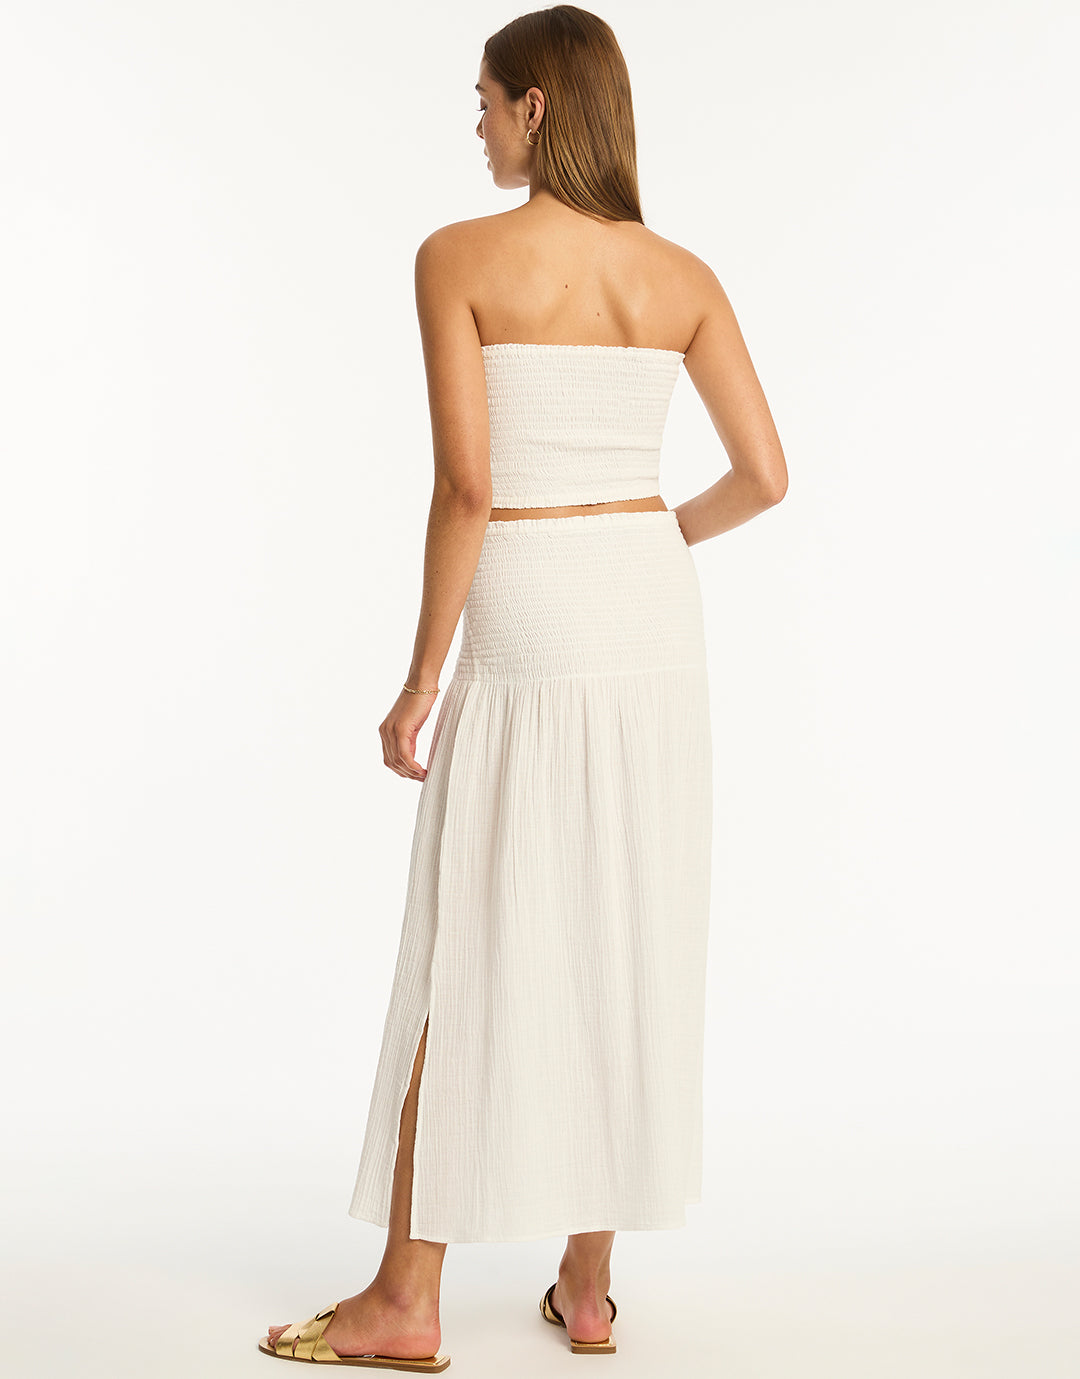 Sunset Beach Skirt - White - Simply Beach UK